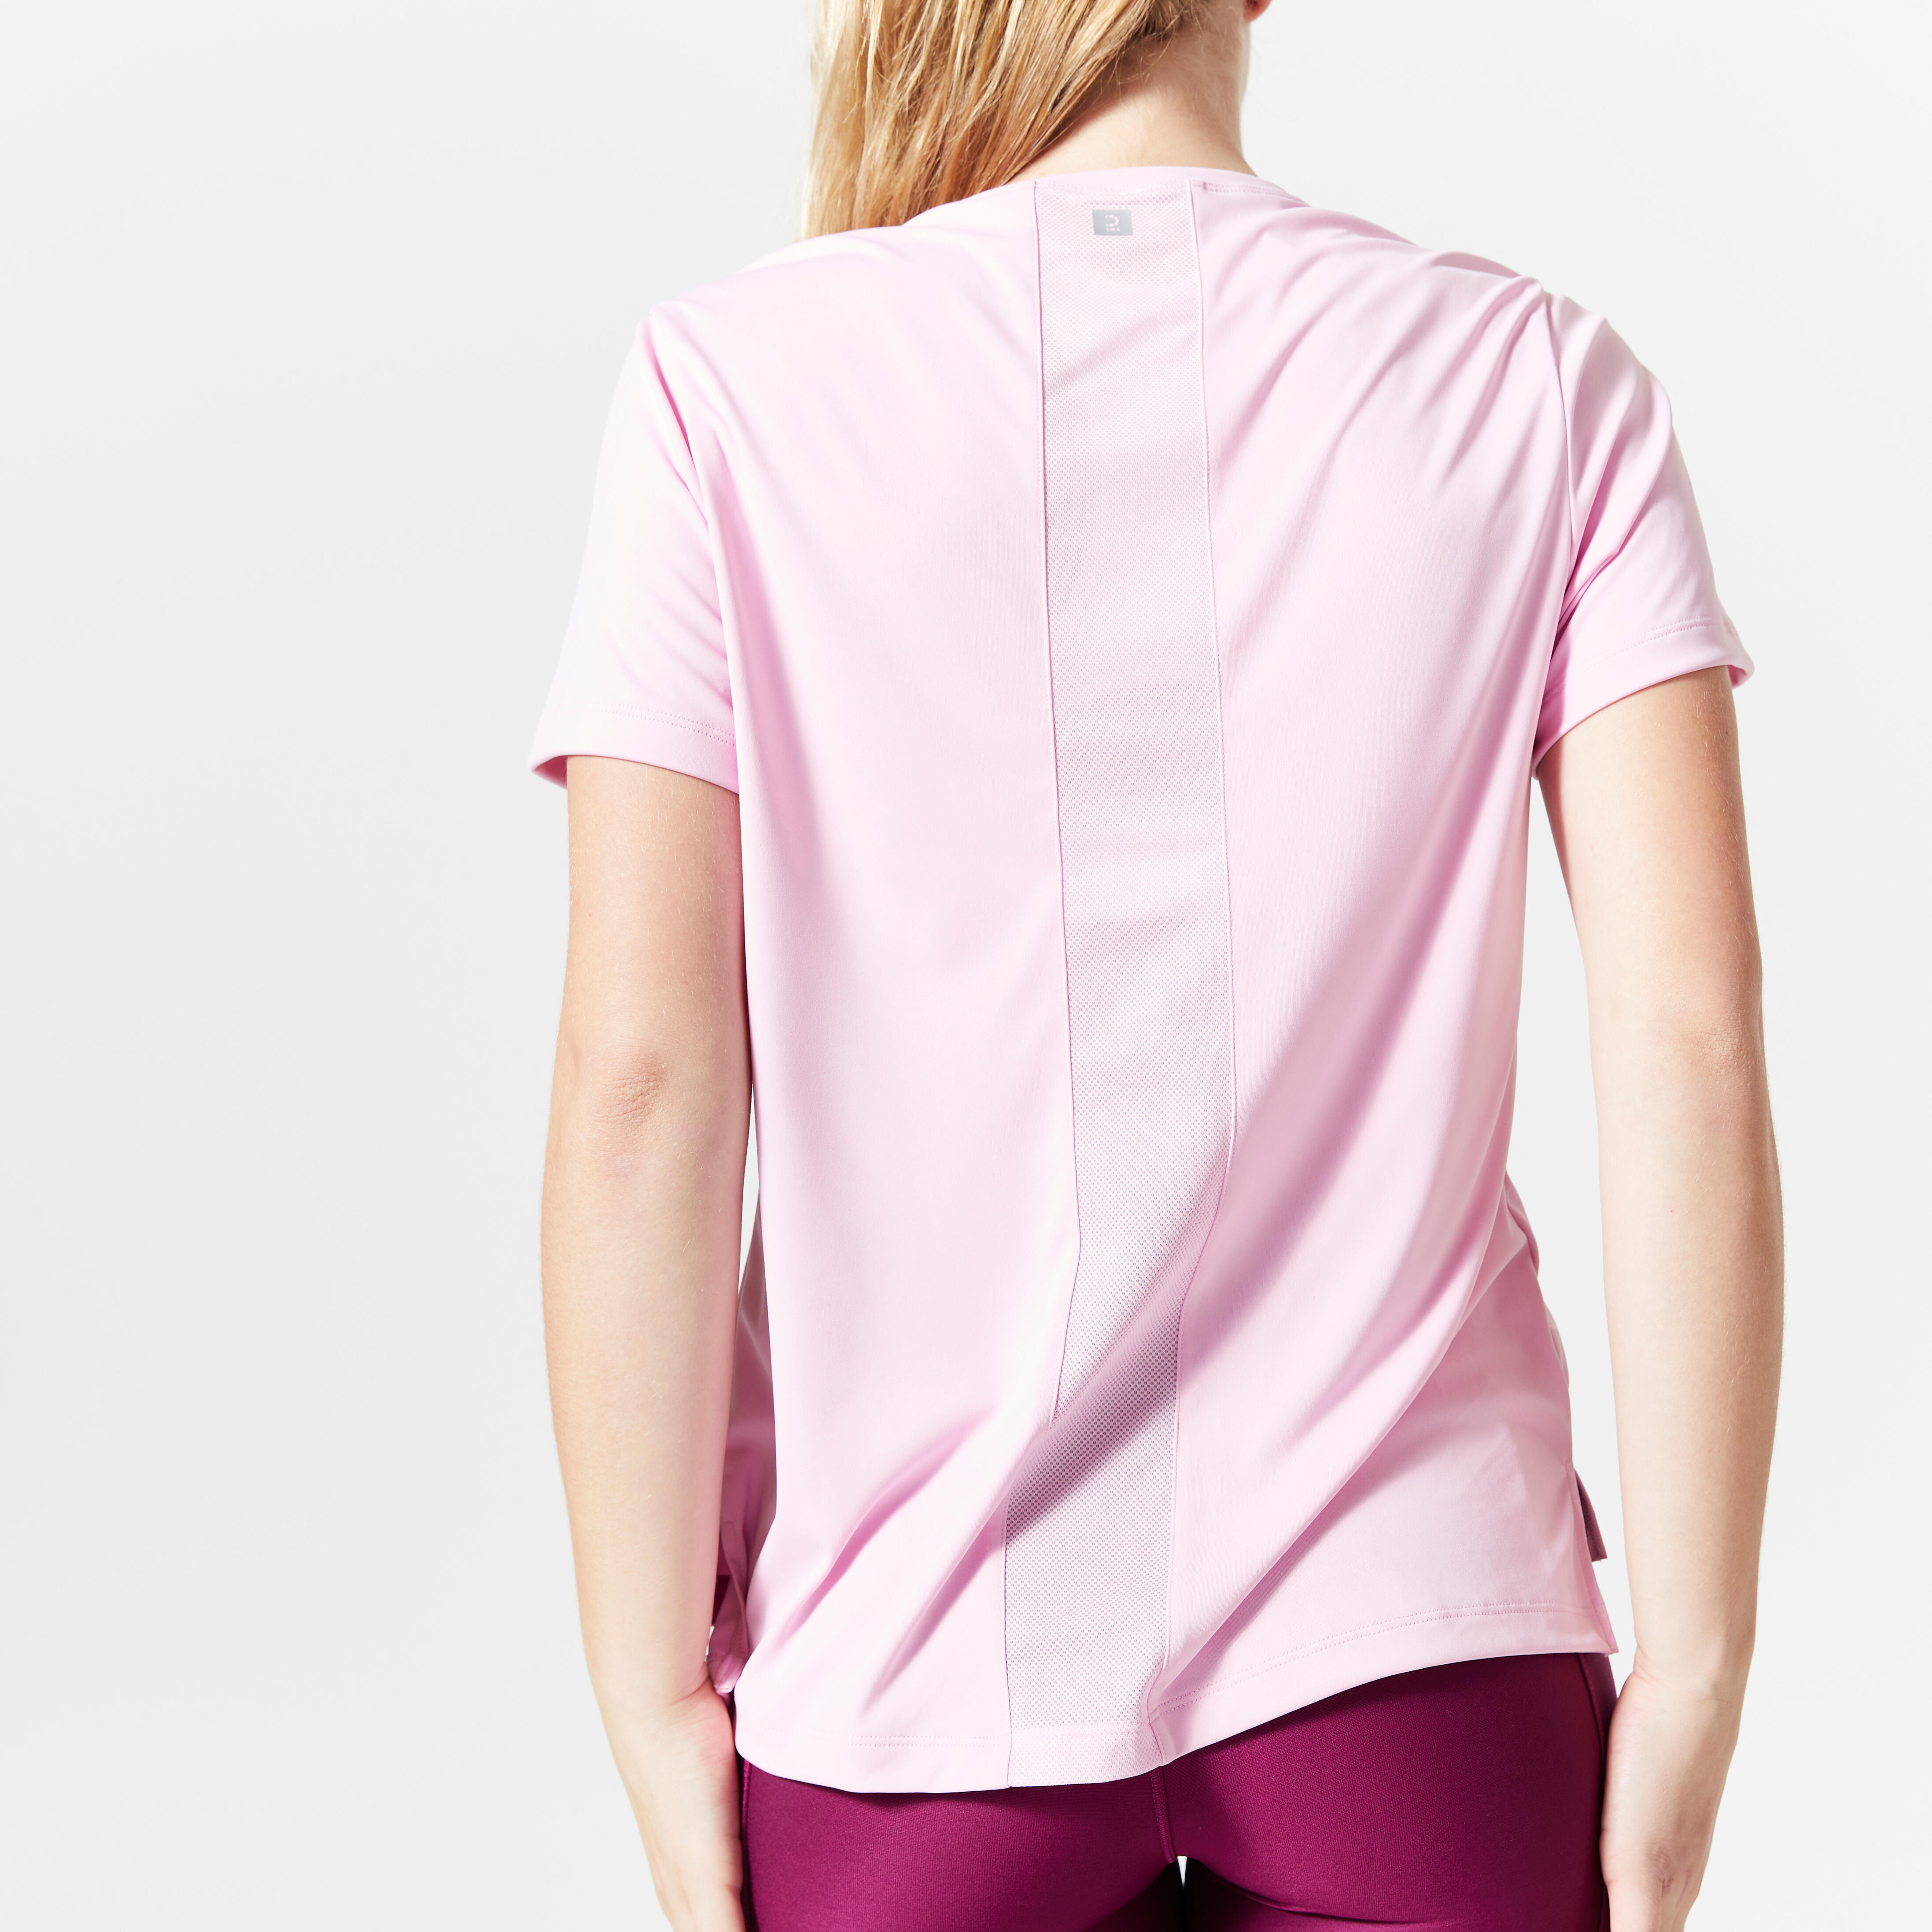 Women’s Fitness T-Shirt - FTS 120 Pink